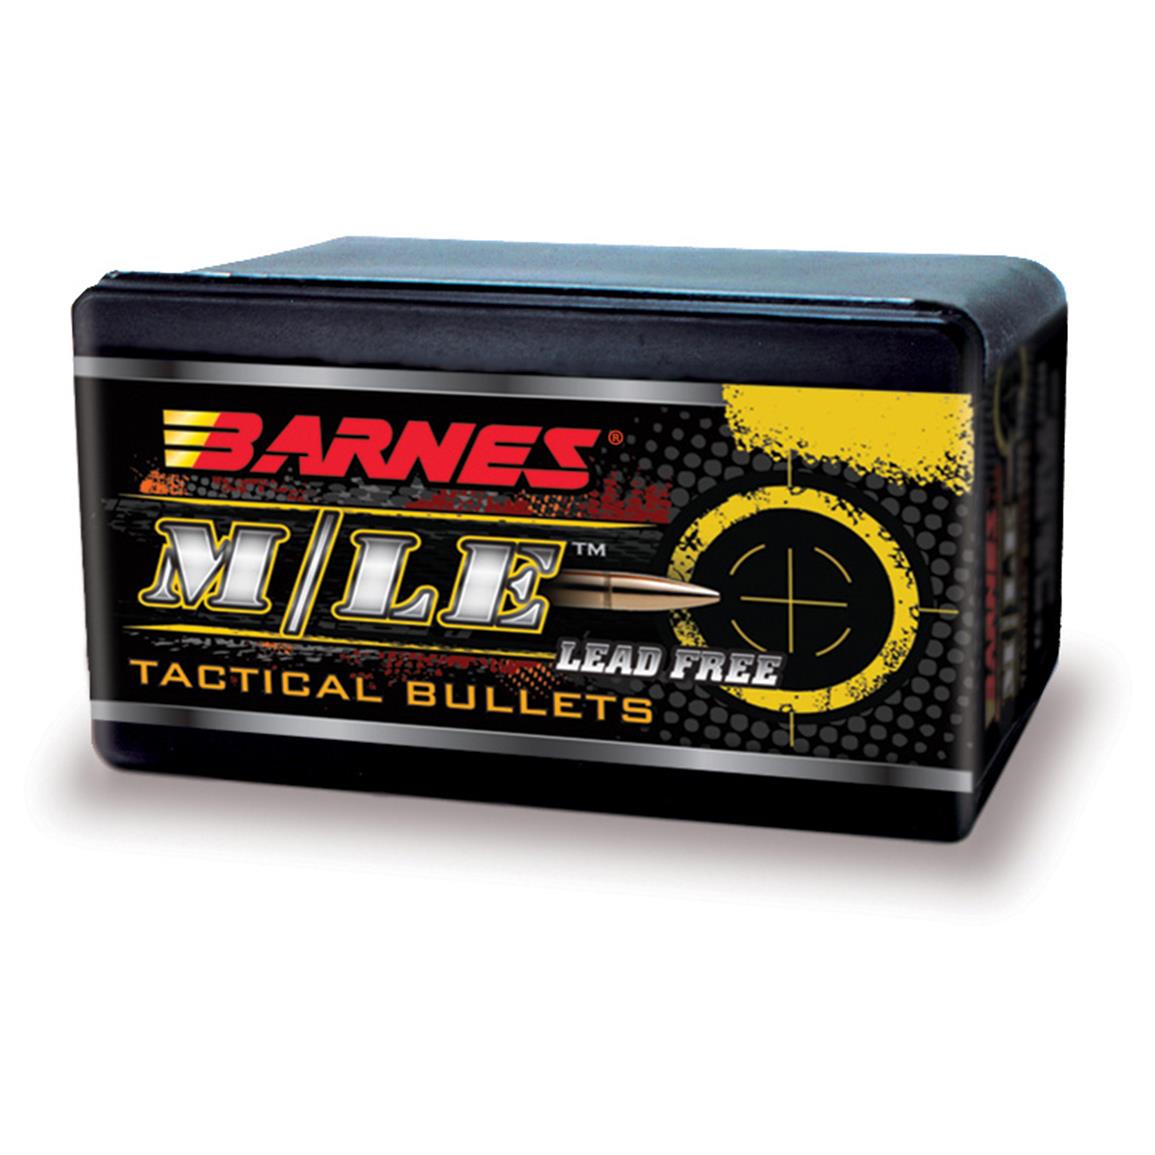 40-Pk. Barnes® 9mm 115-grain TAC-XP Pistol Reloading Bullets